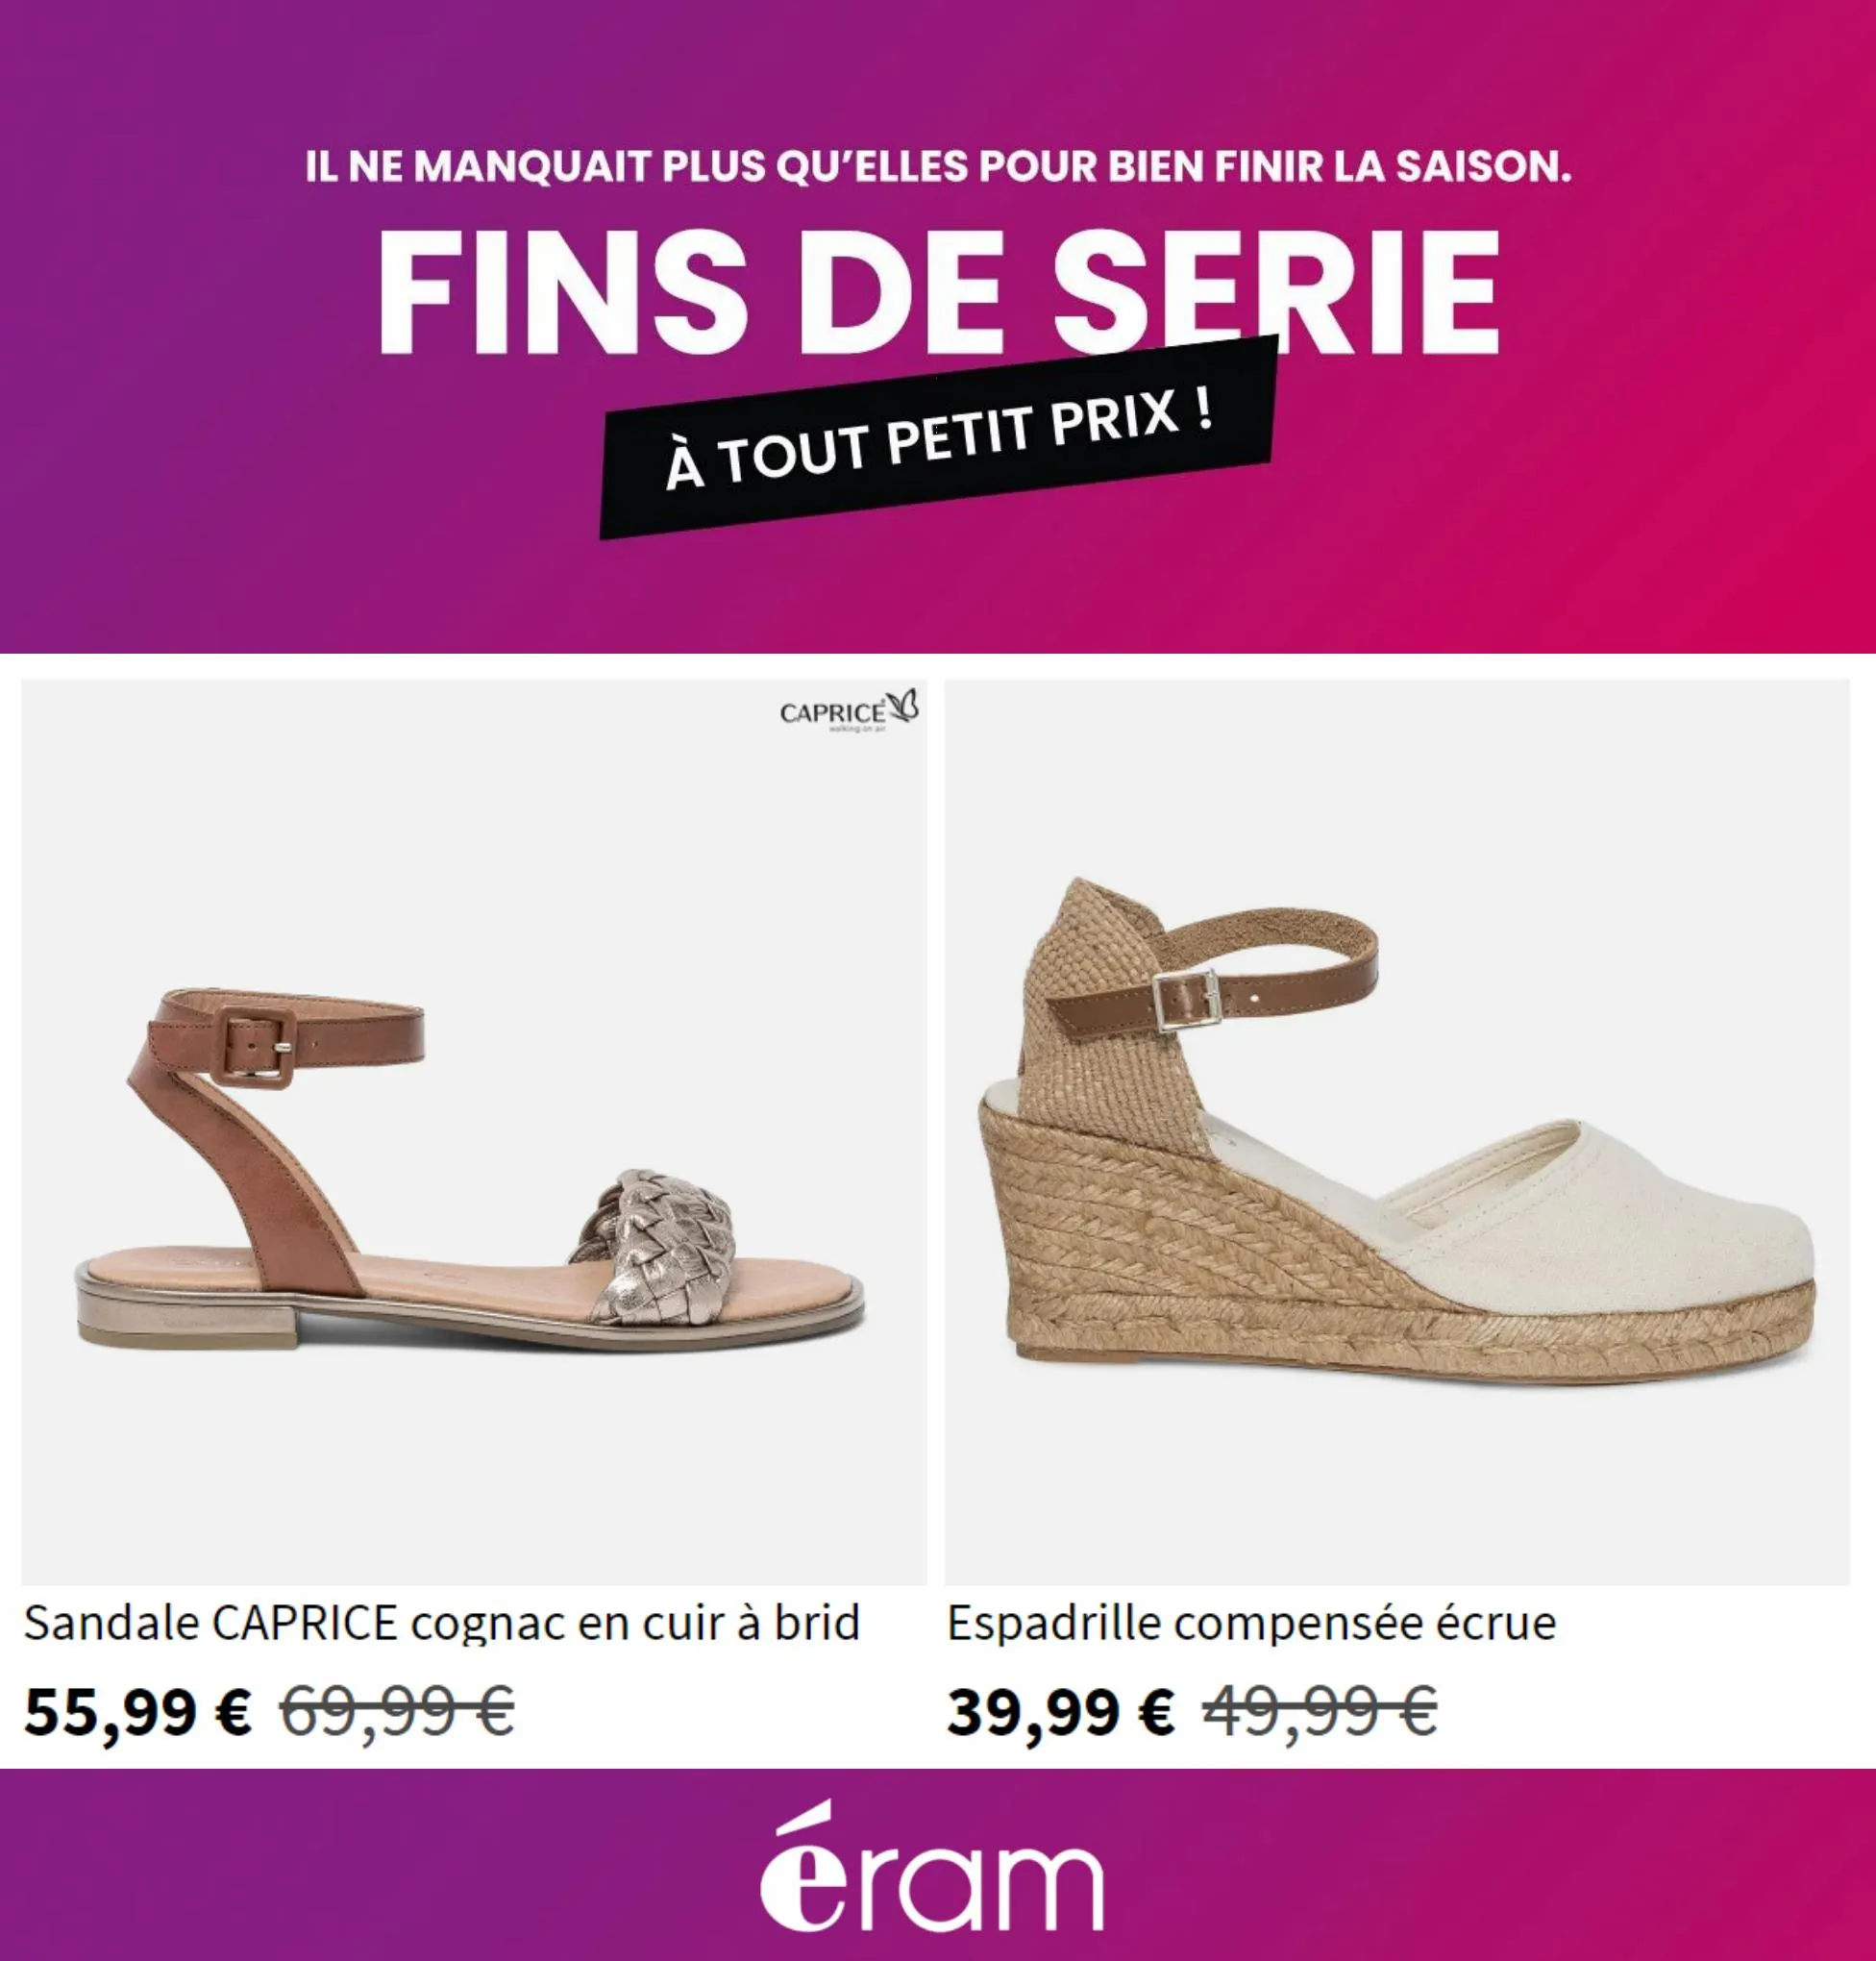 Catalogue Fins de Serie à Tout Petit Prix!, page 00005